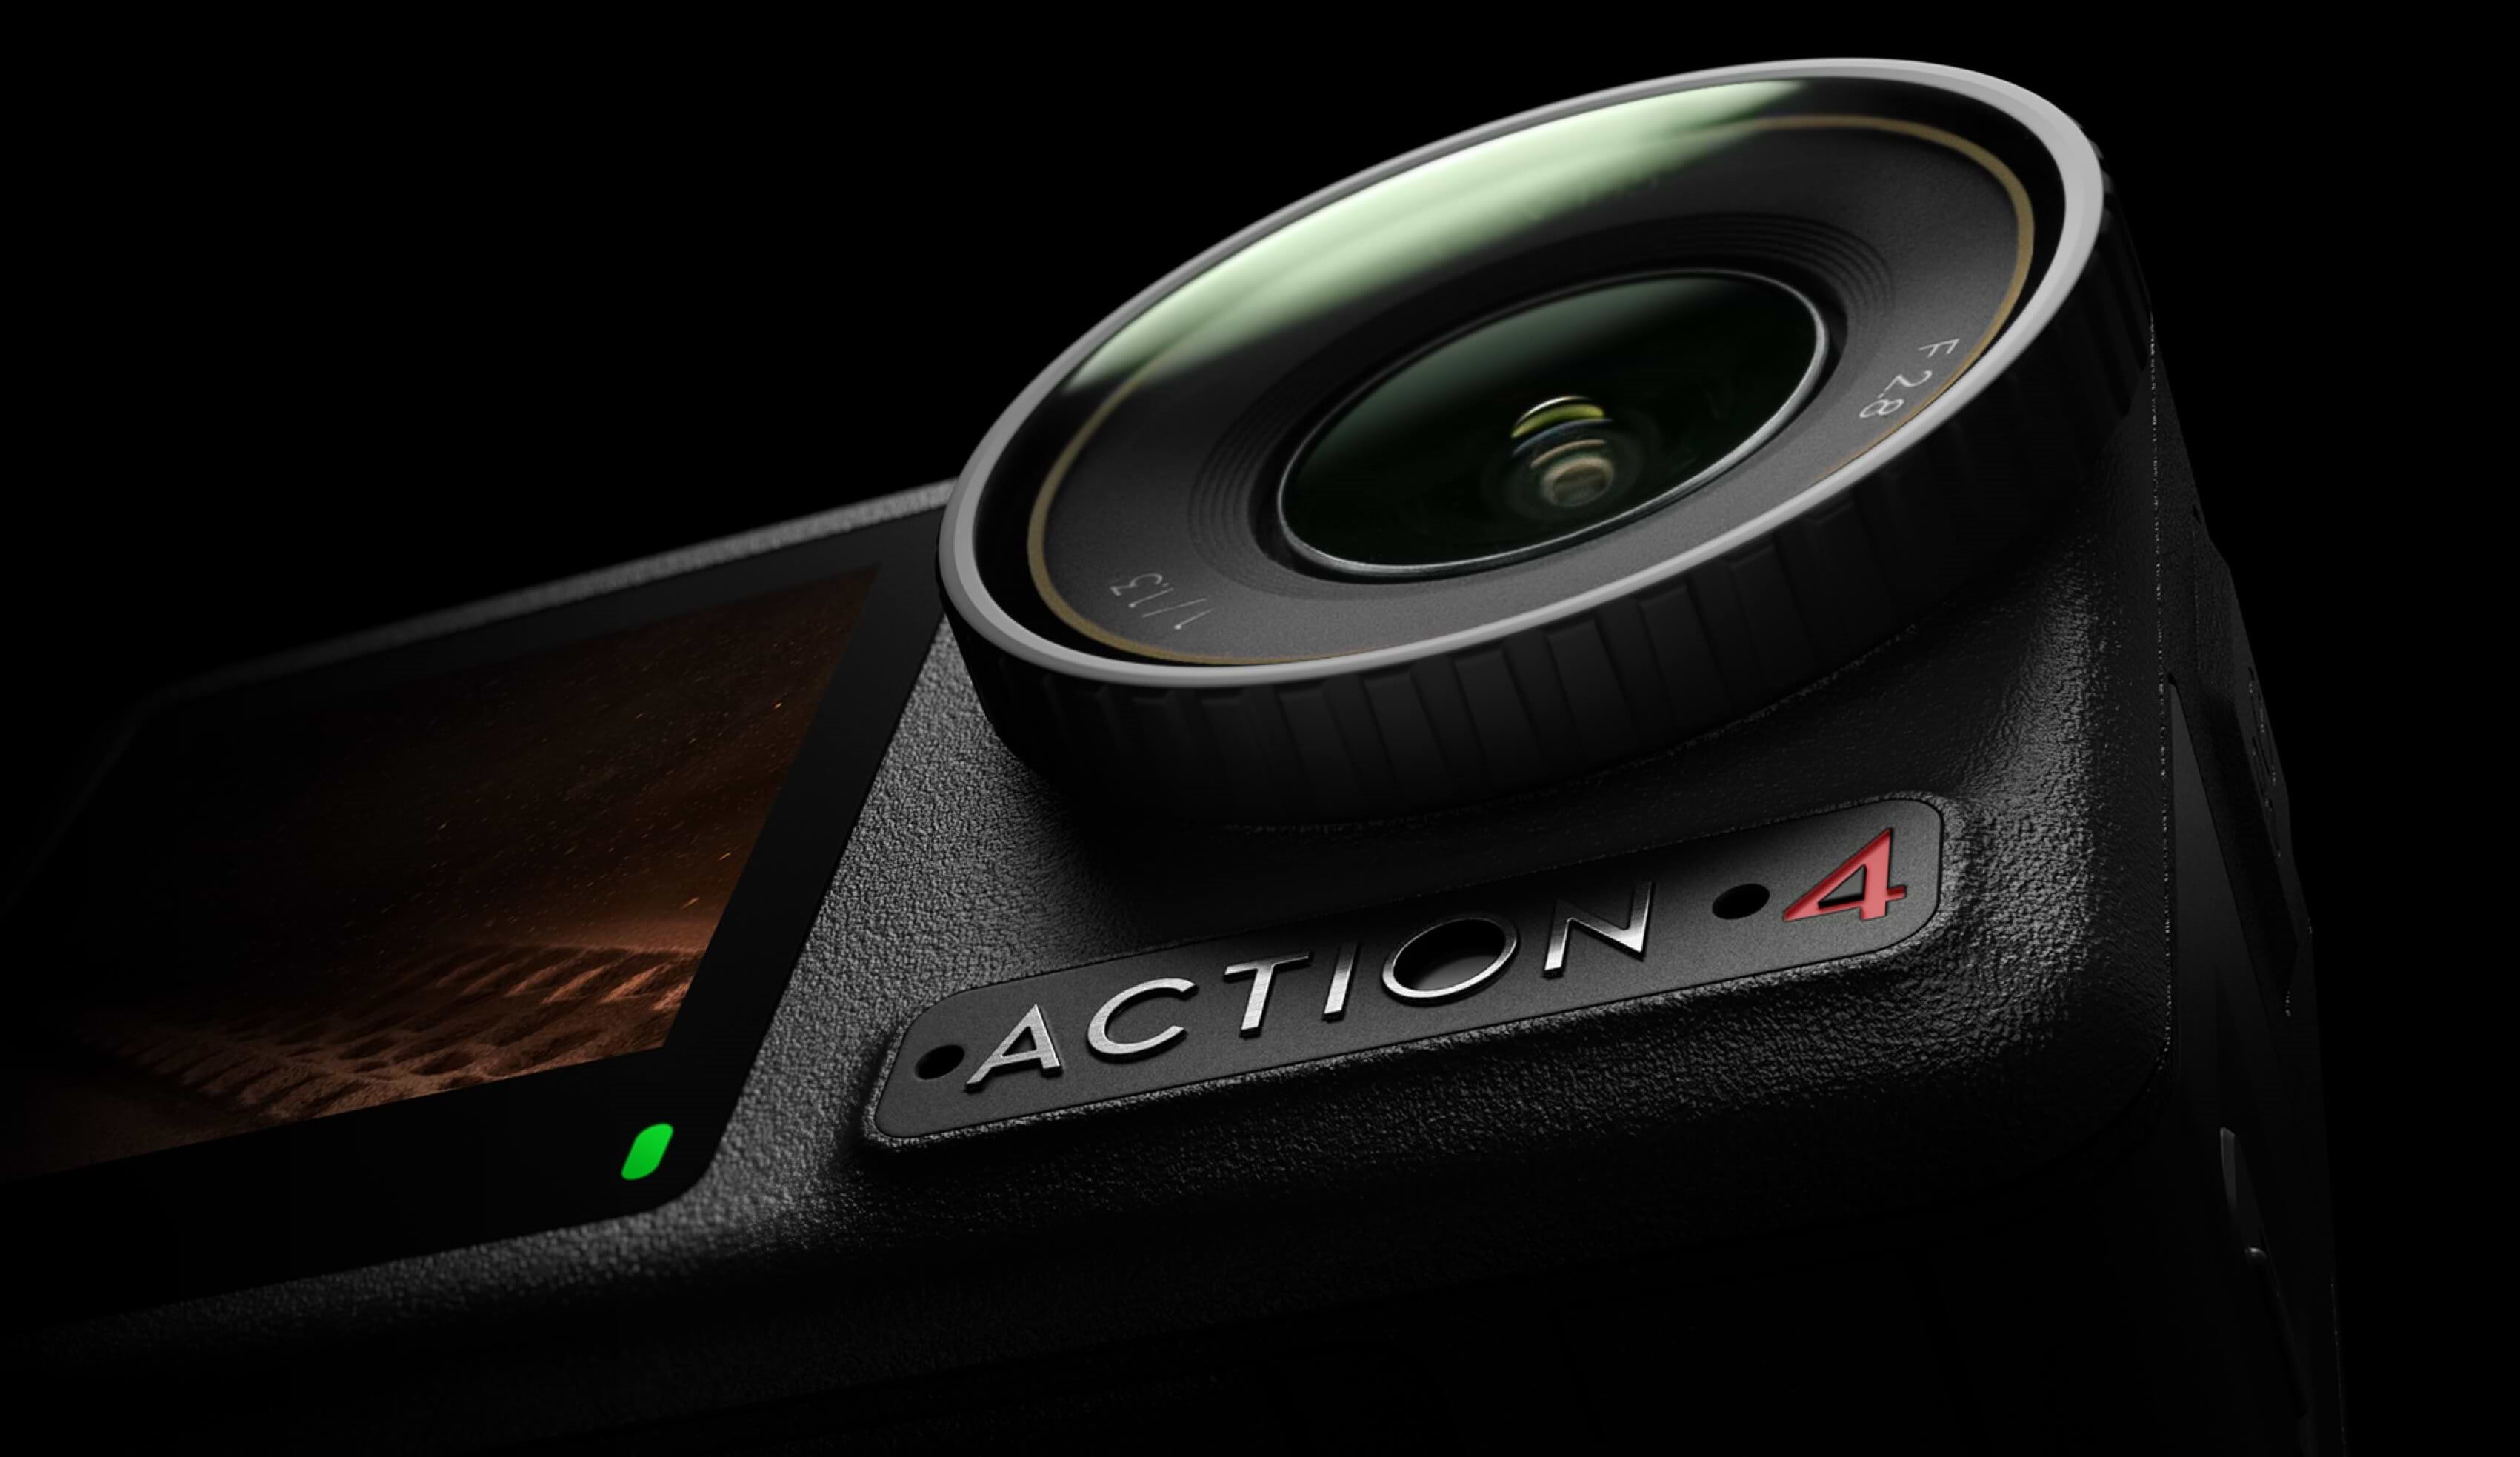 מצלמת אקסטרים DJI Osmo Action 4 Adventure Combo 4K - שנה אחריות ע"י היבואן הרשמי